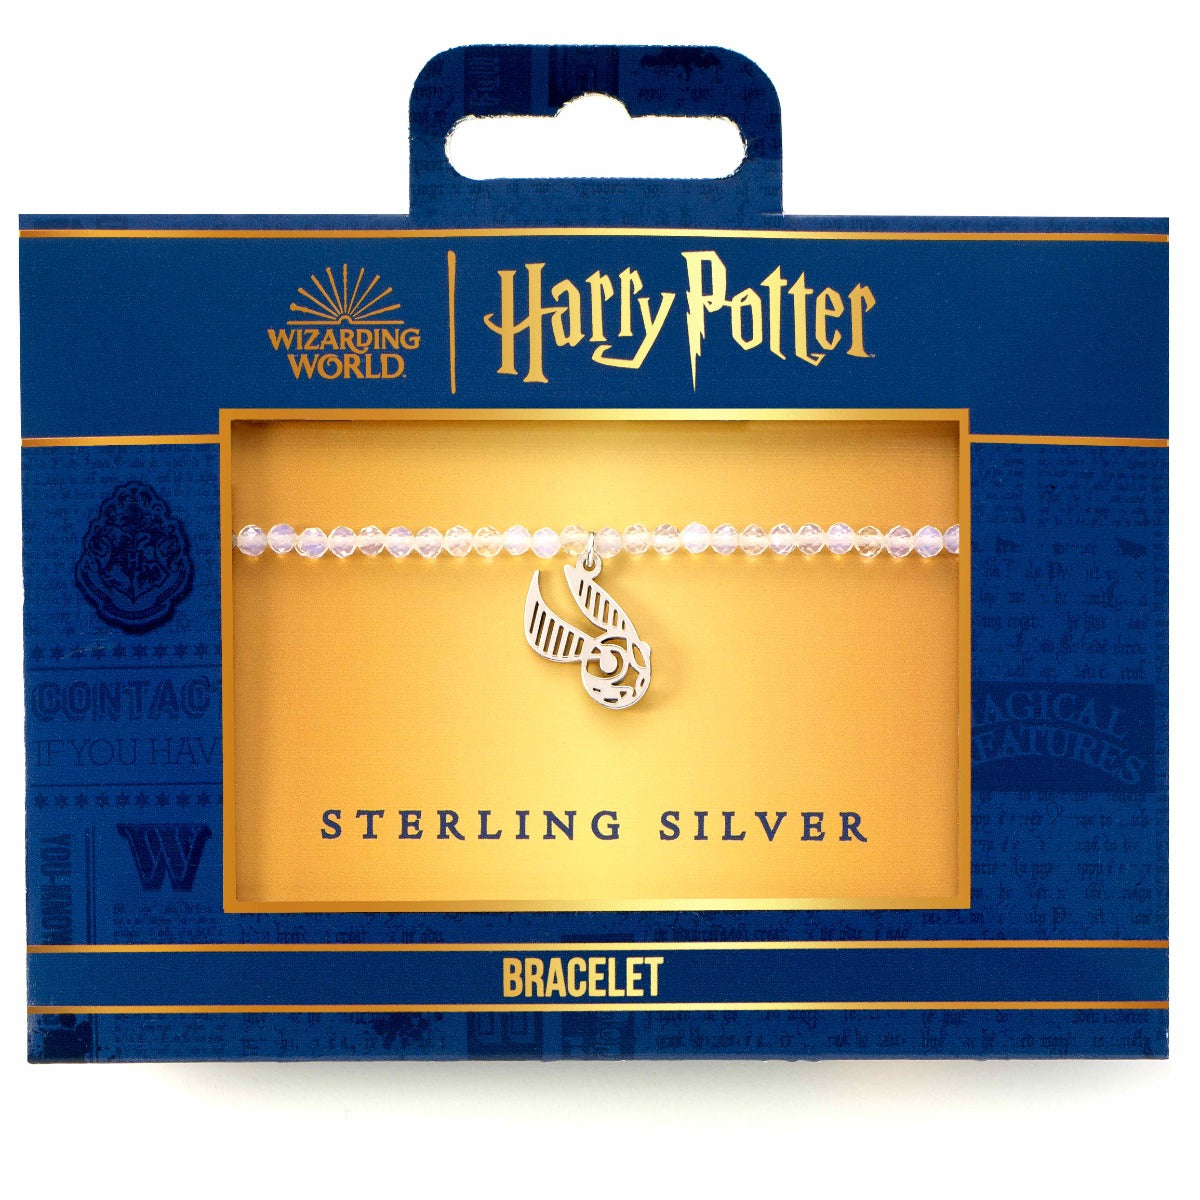 Harry Potter Crystal Bracelet & Sterling Silver Golden Snitch Charm